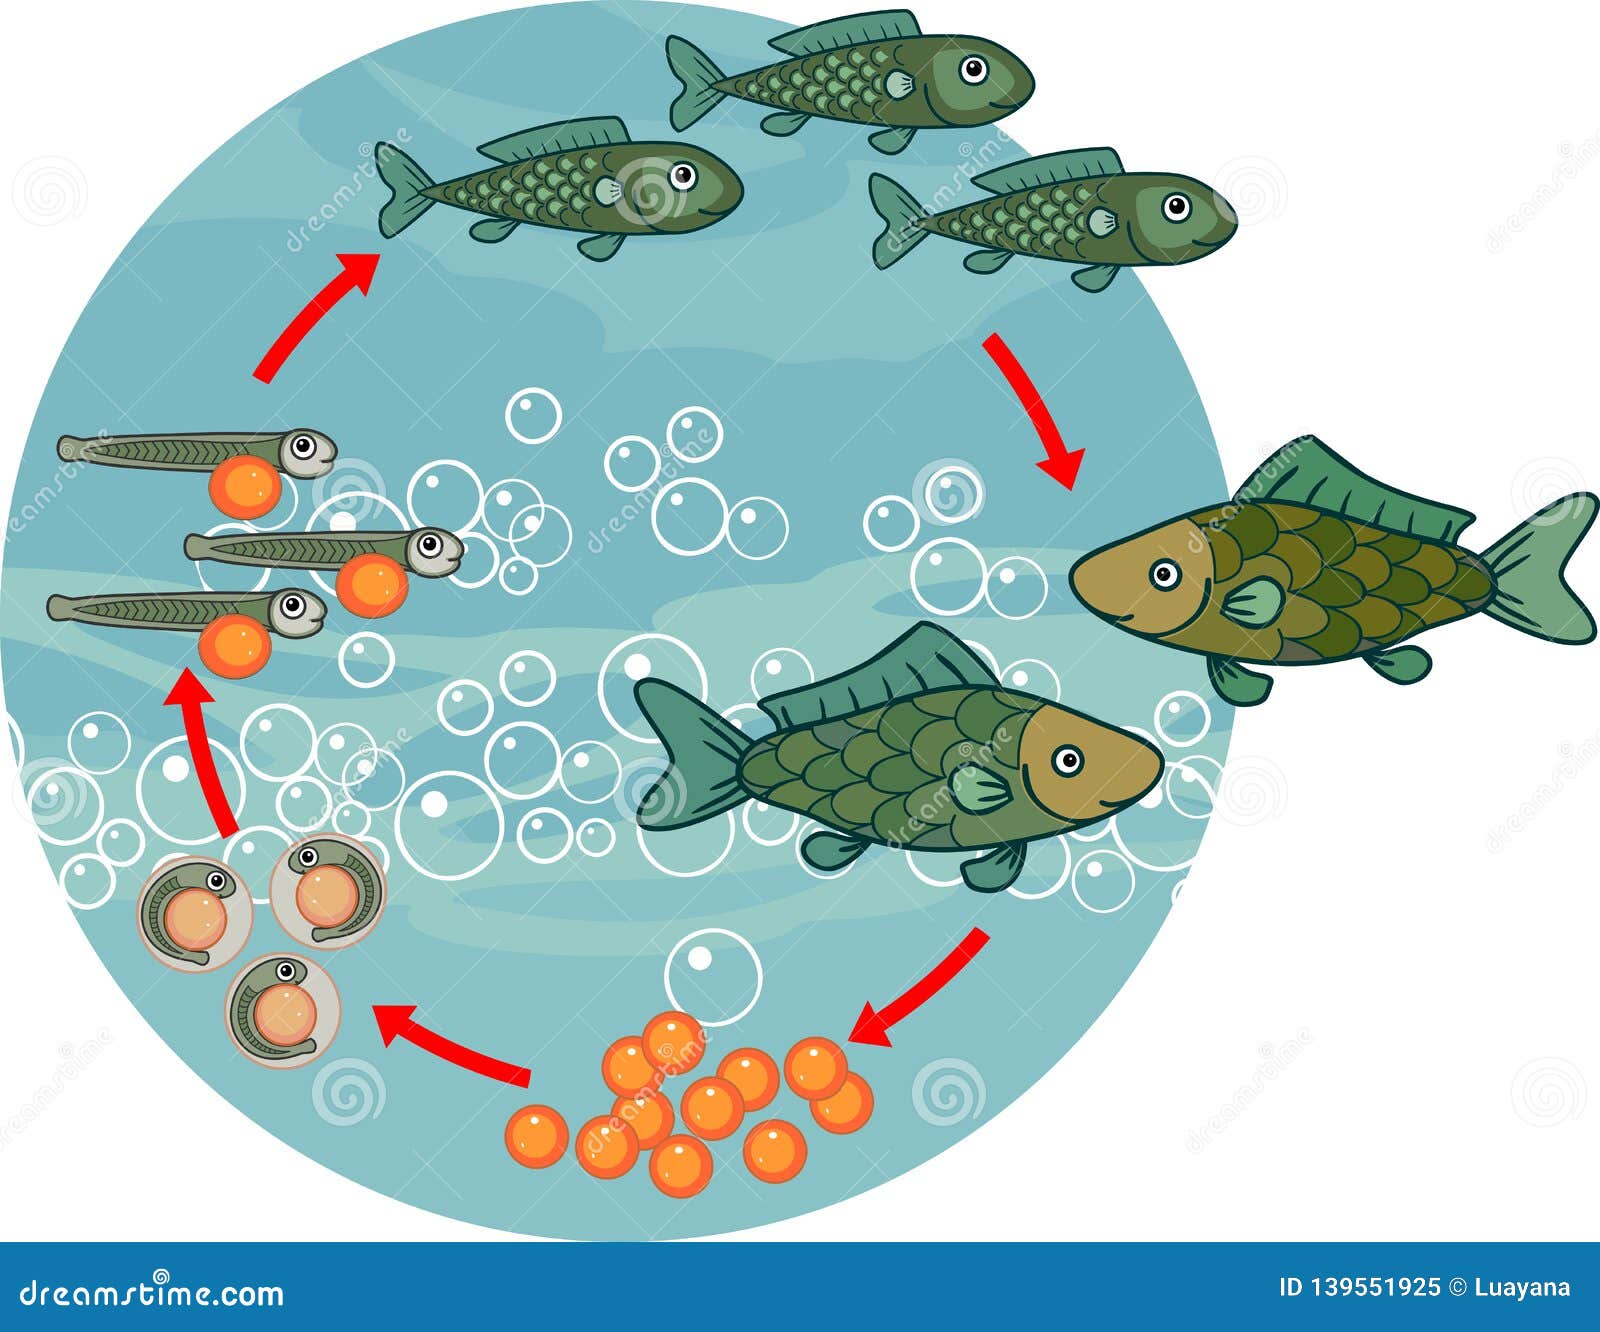 Лосось внутреннее оплодотворение. Цикл развития рыбы схема. Жизненный цикл развития рыбы. Стадии цикла развития рыб. Этапы размножения рыб.